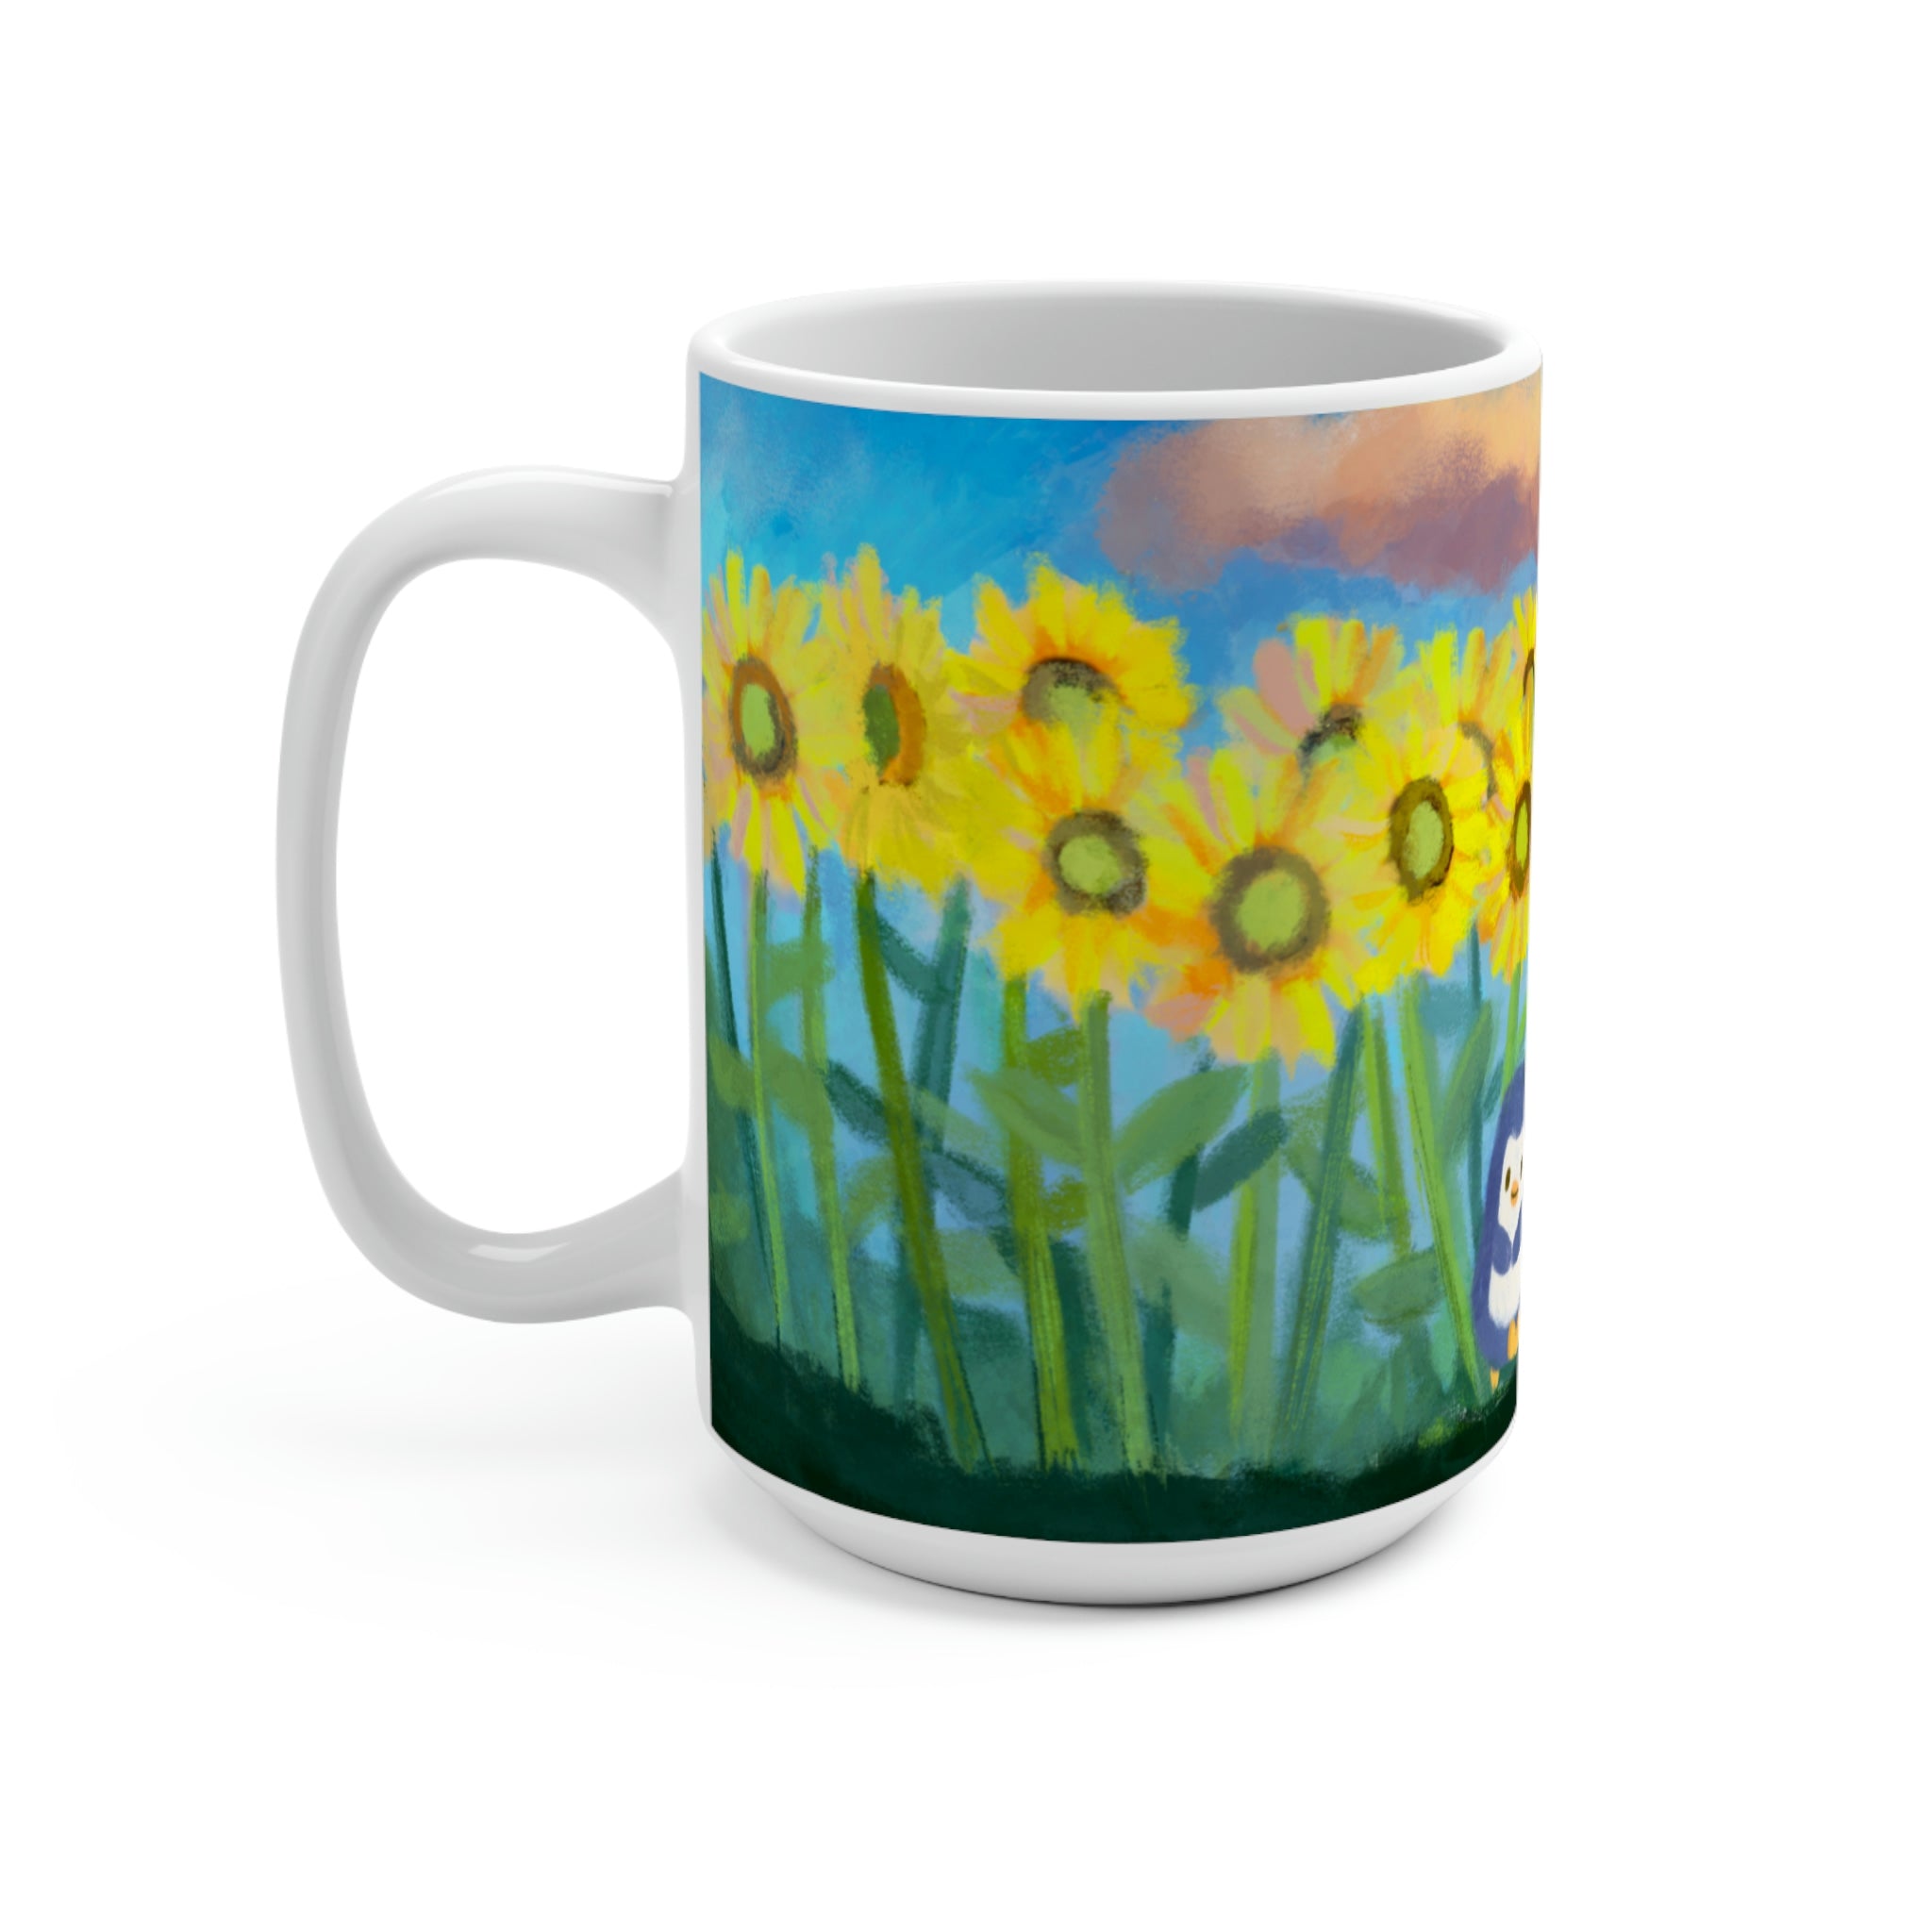 Among the Sunflowers Mug